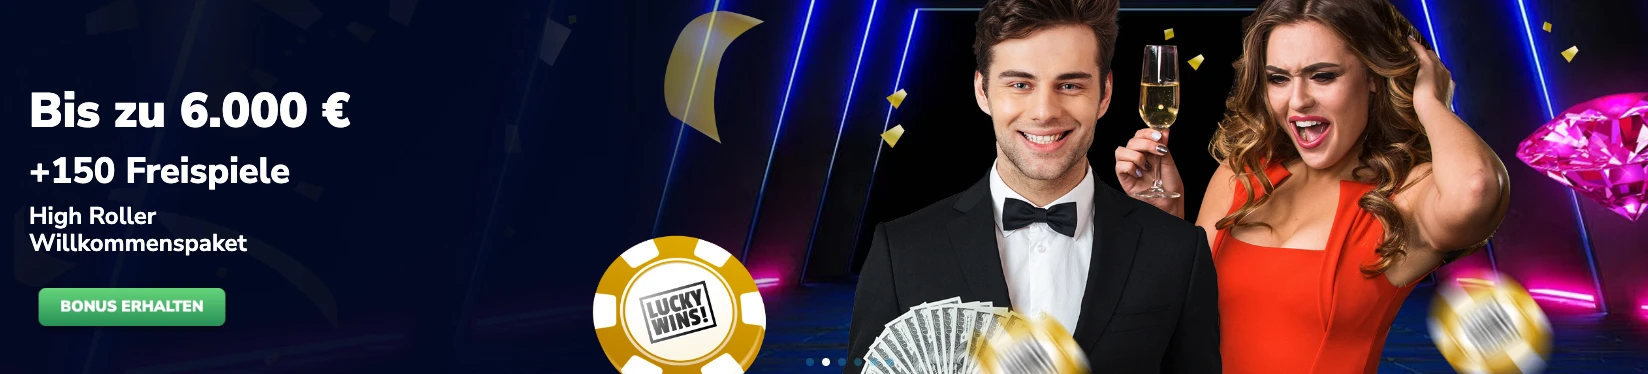 6.000€ High Roller Bonus im LuckyWins Casino